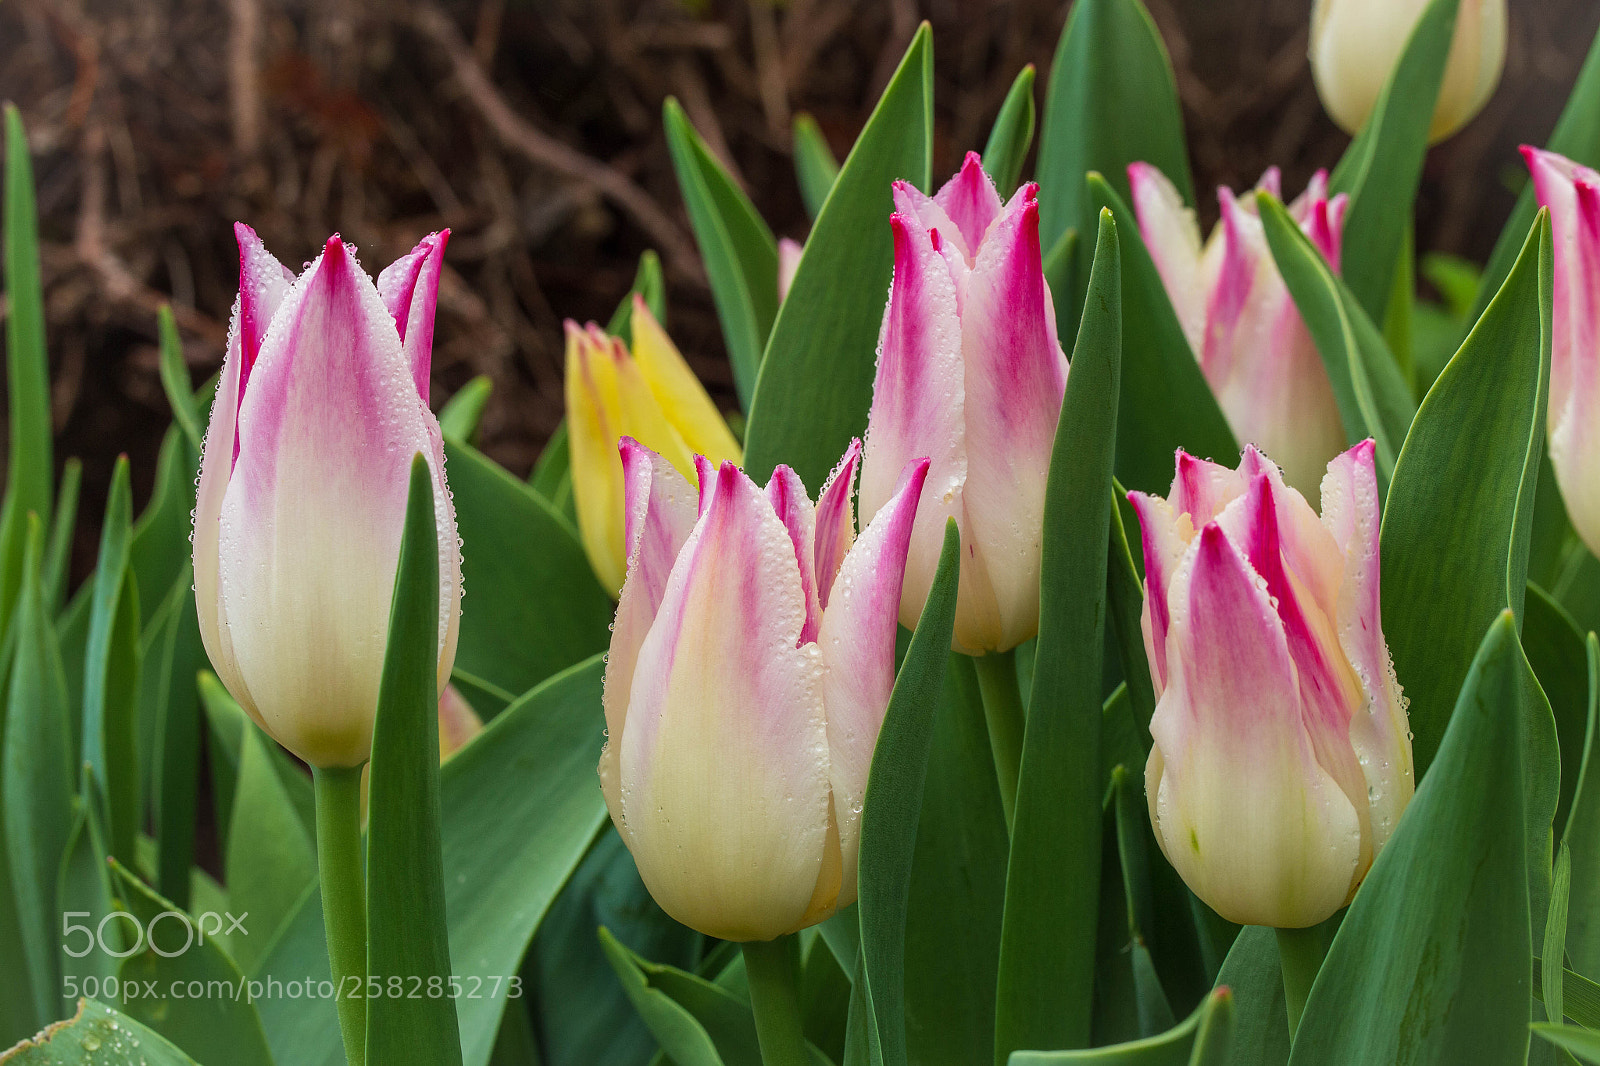 Canon EOS 6D sample photo. Rainy tulip garden photography